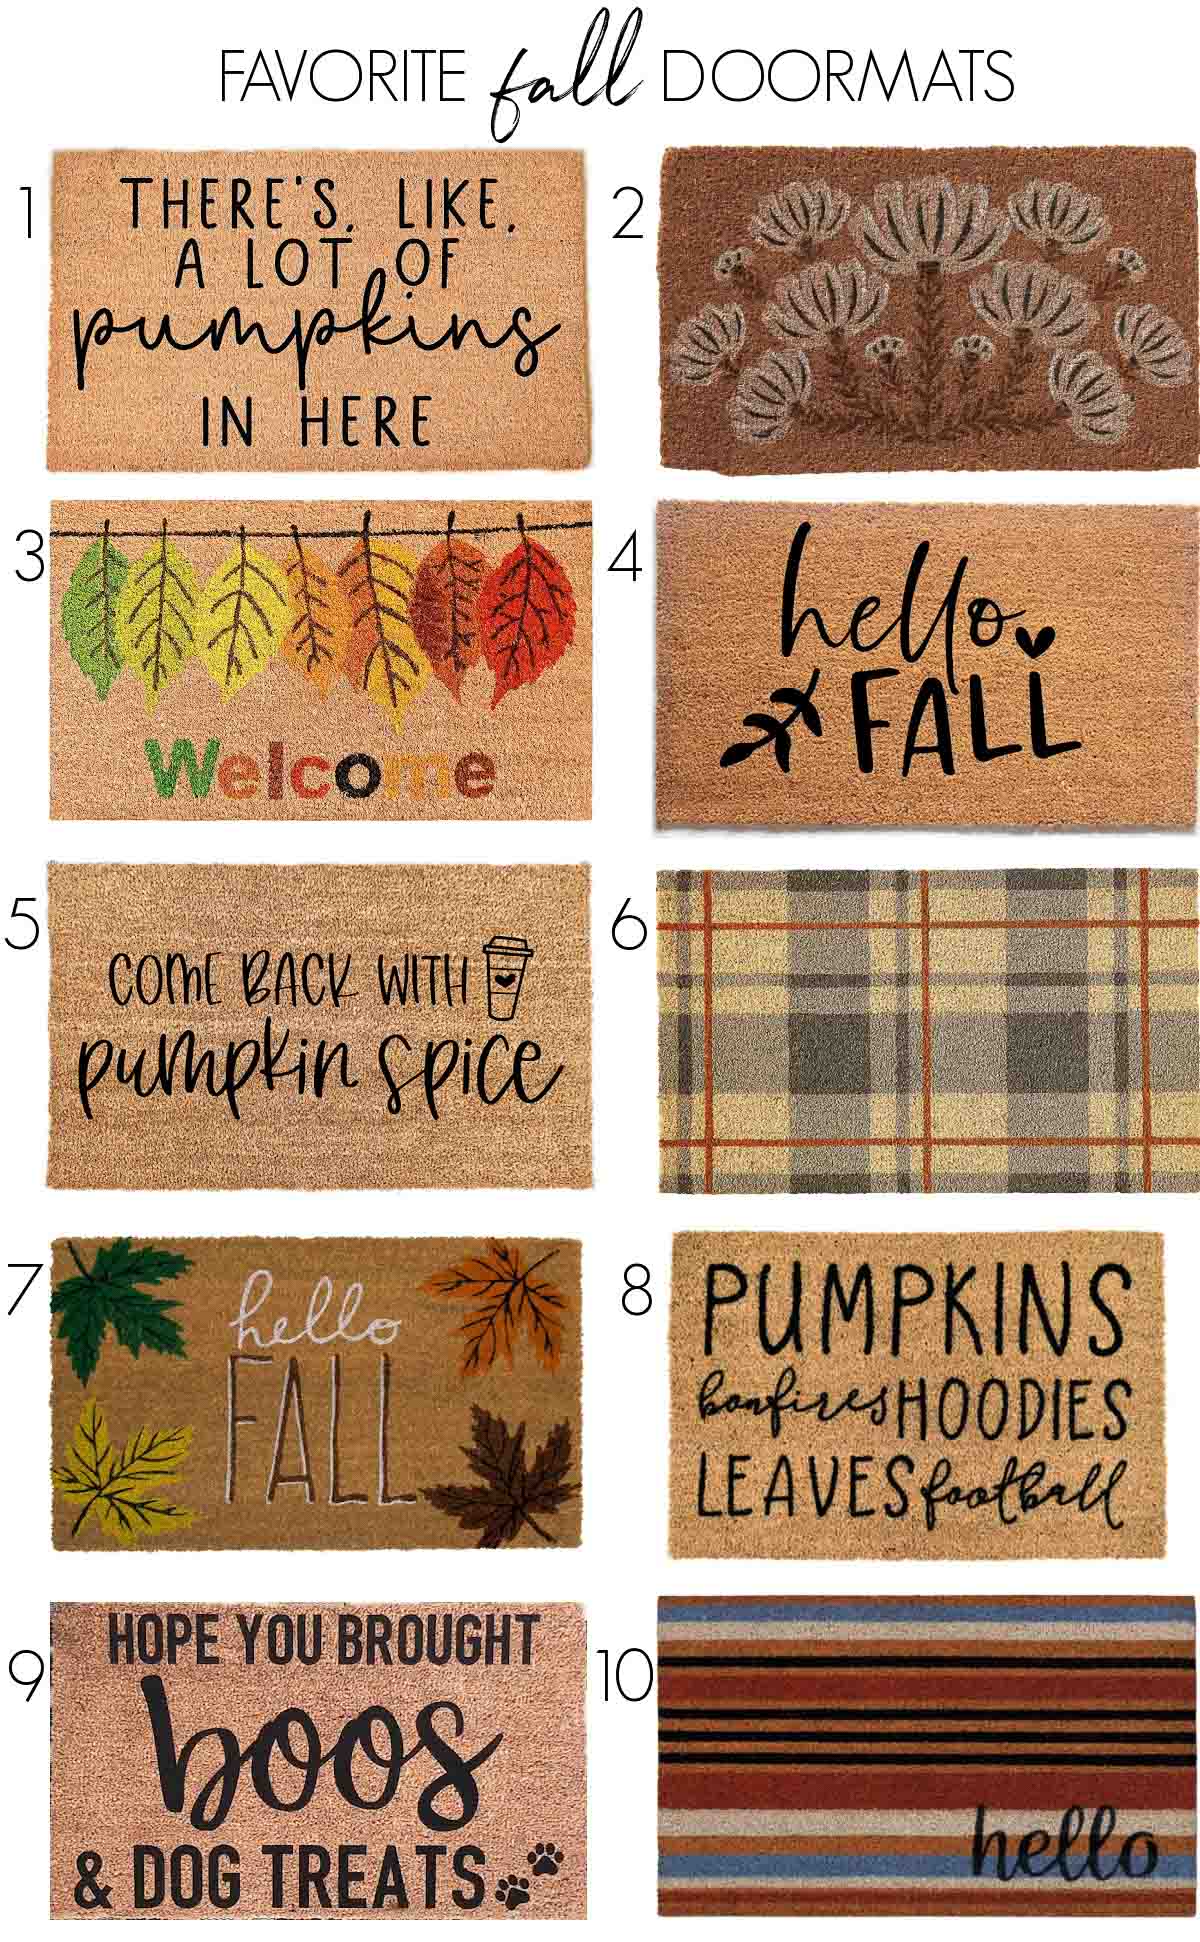 Fall doormat favorites!